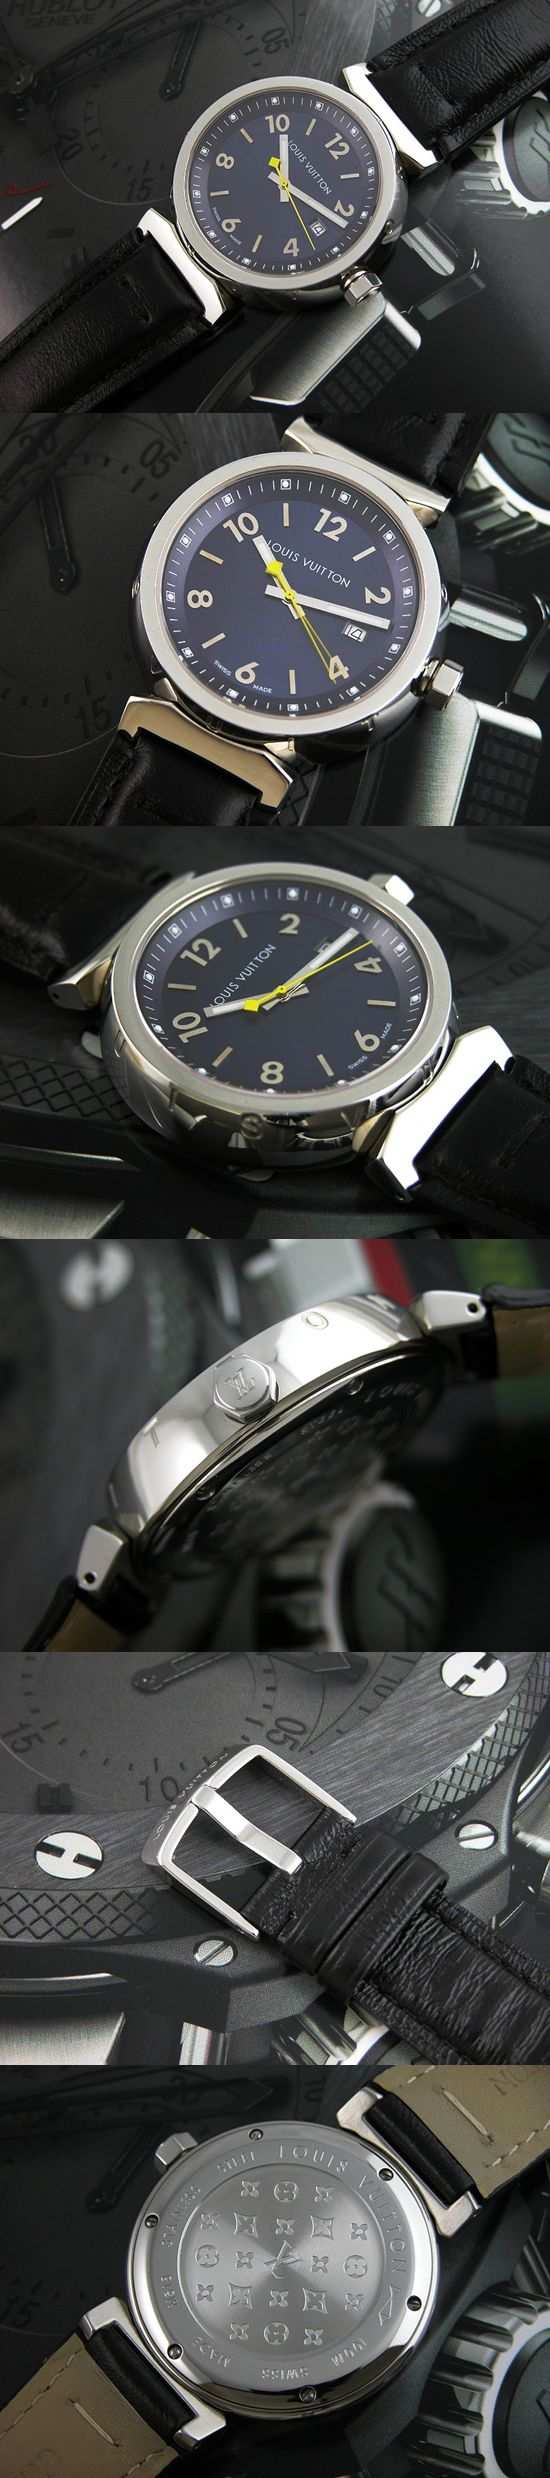 おしゃれなブランド時計がルイ ヴィトン-タンブール-LOUIS VUITTON-LV00030J-男性用/女性用を提供します.